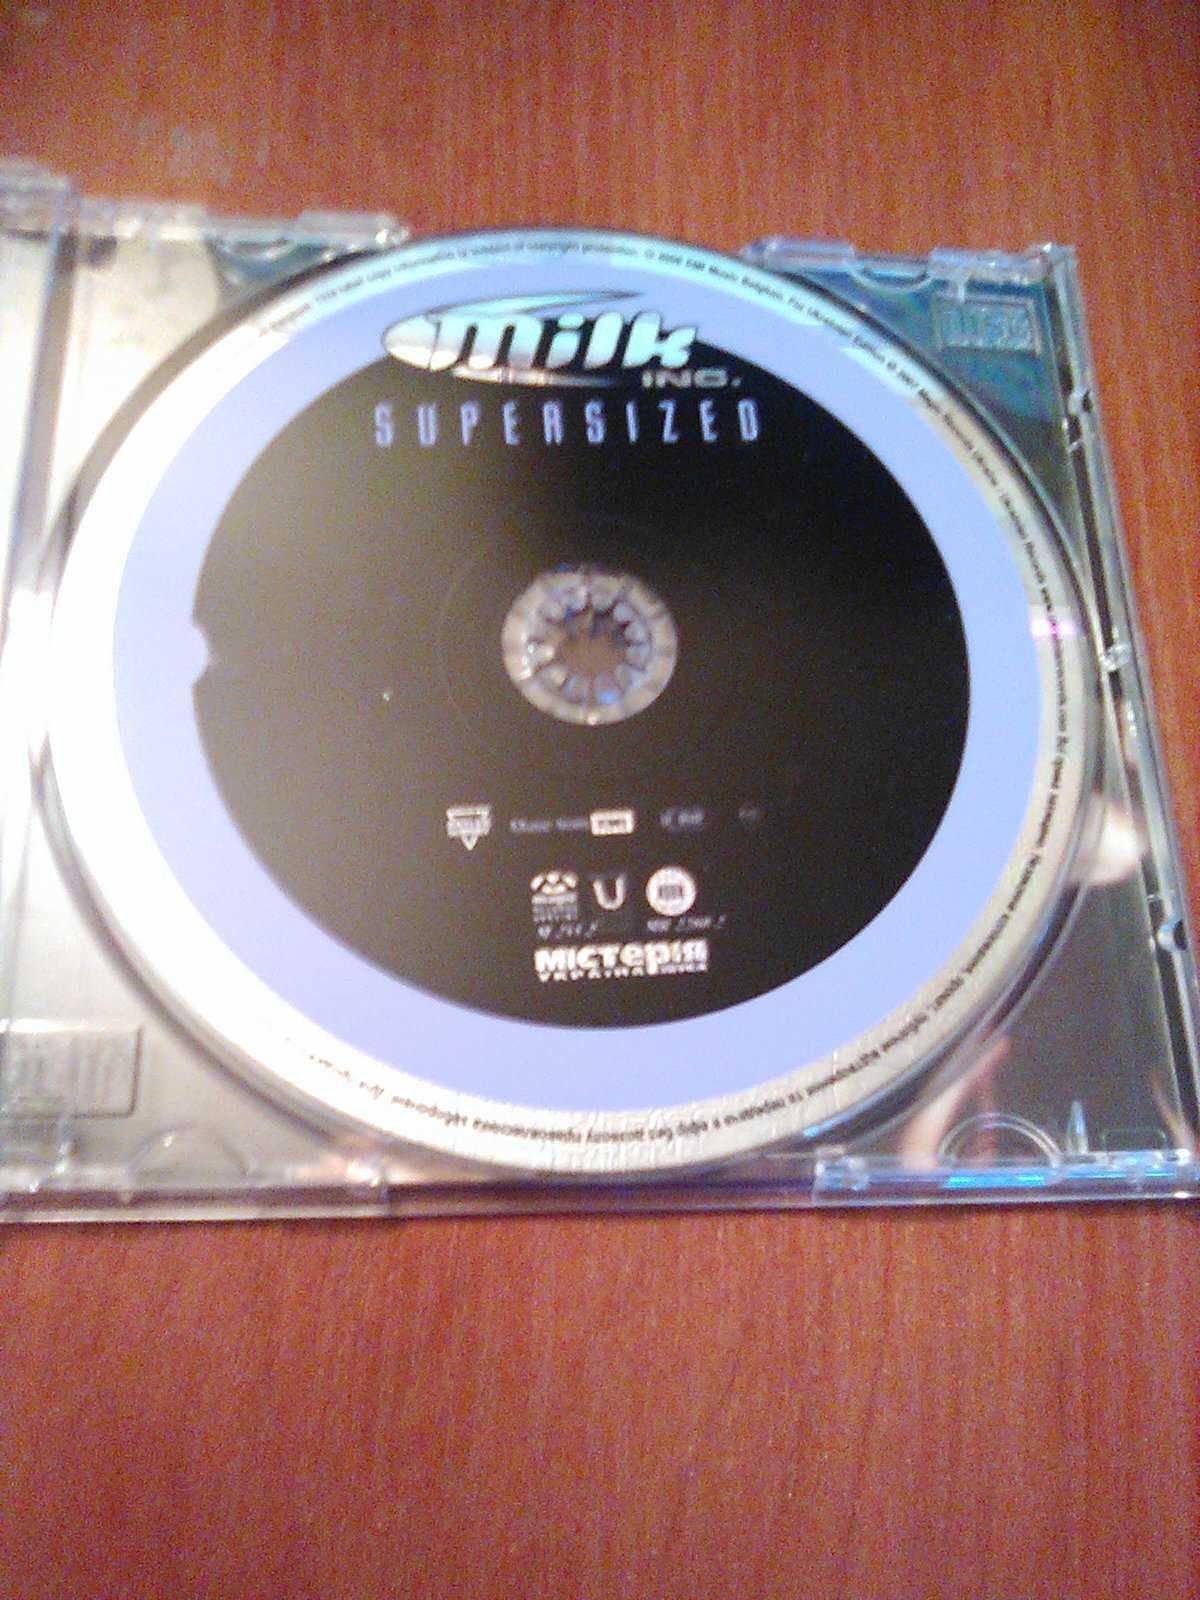 Музыкальный CD Milk Inc. альбом Supersized 2006 год